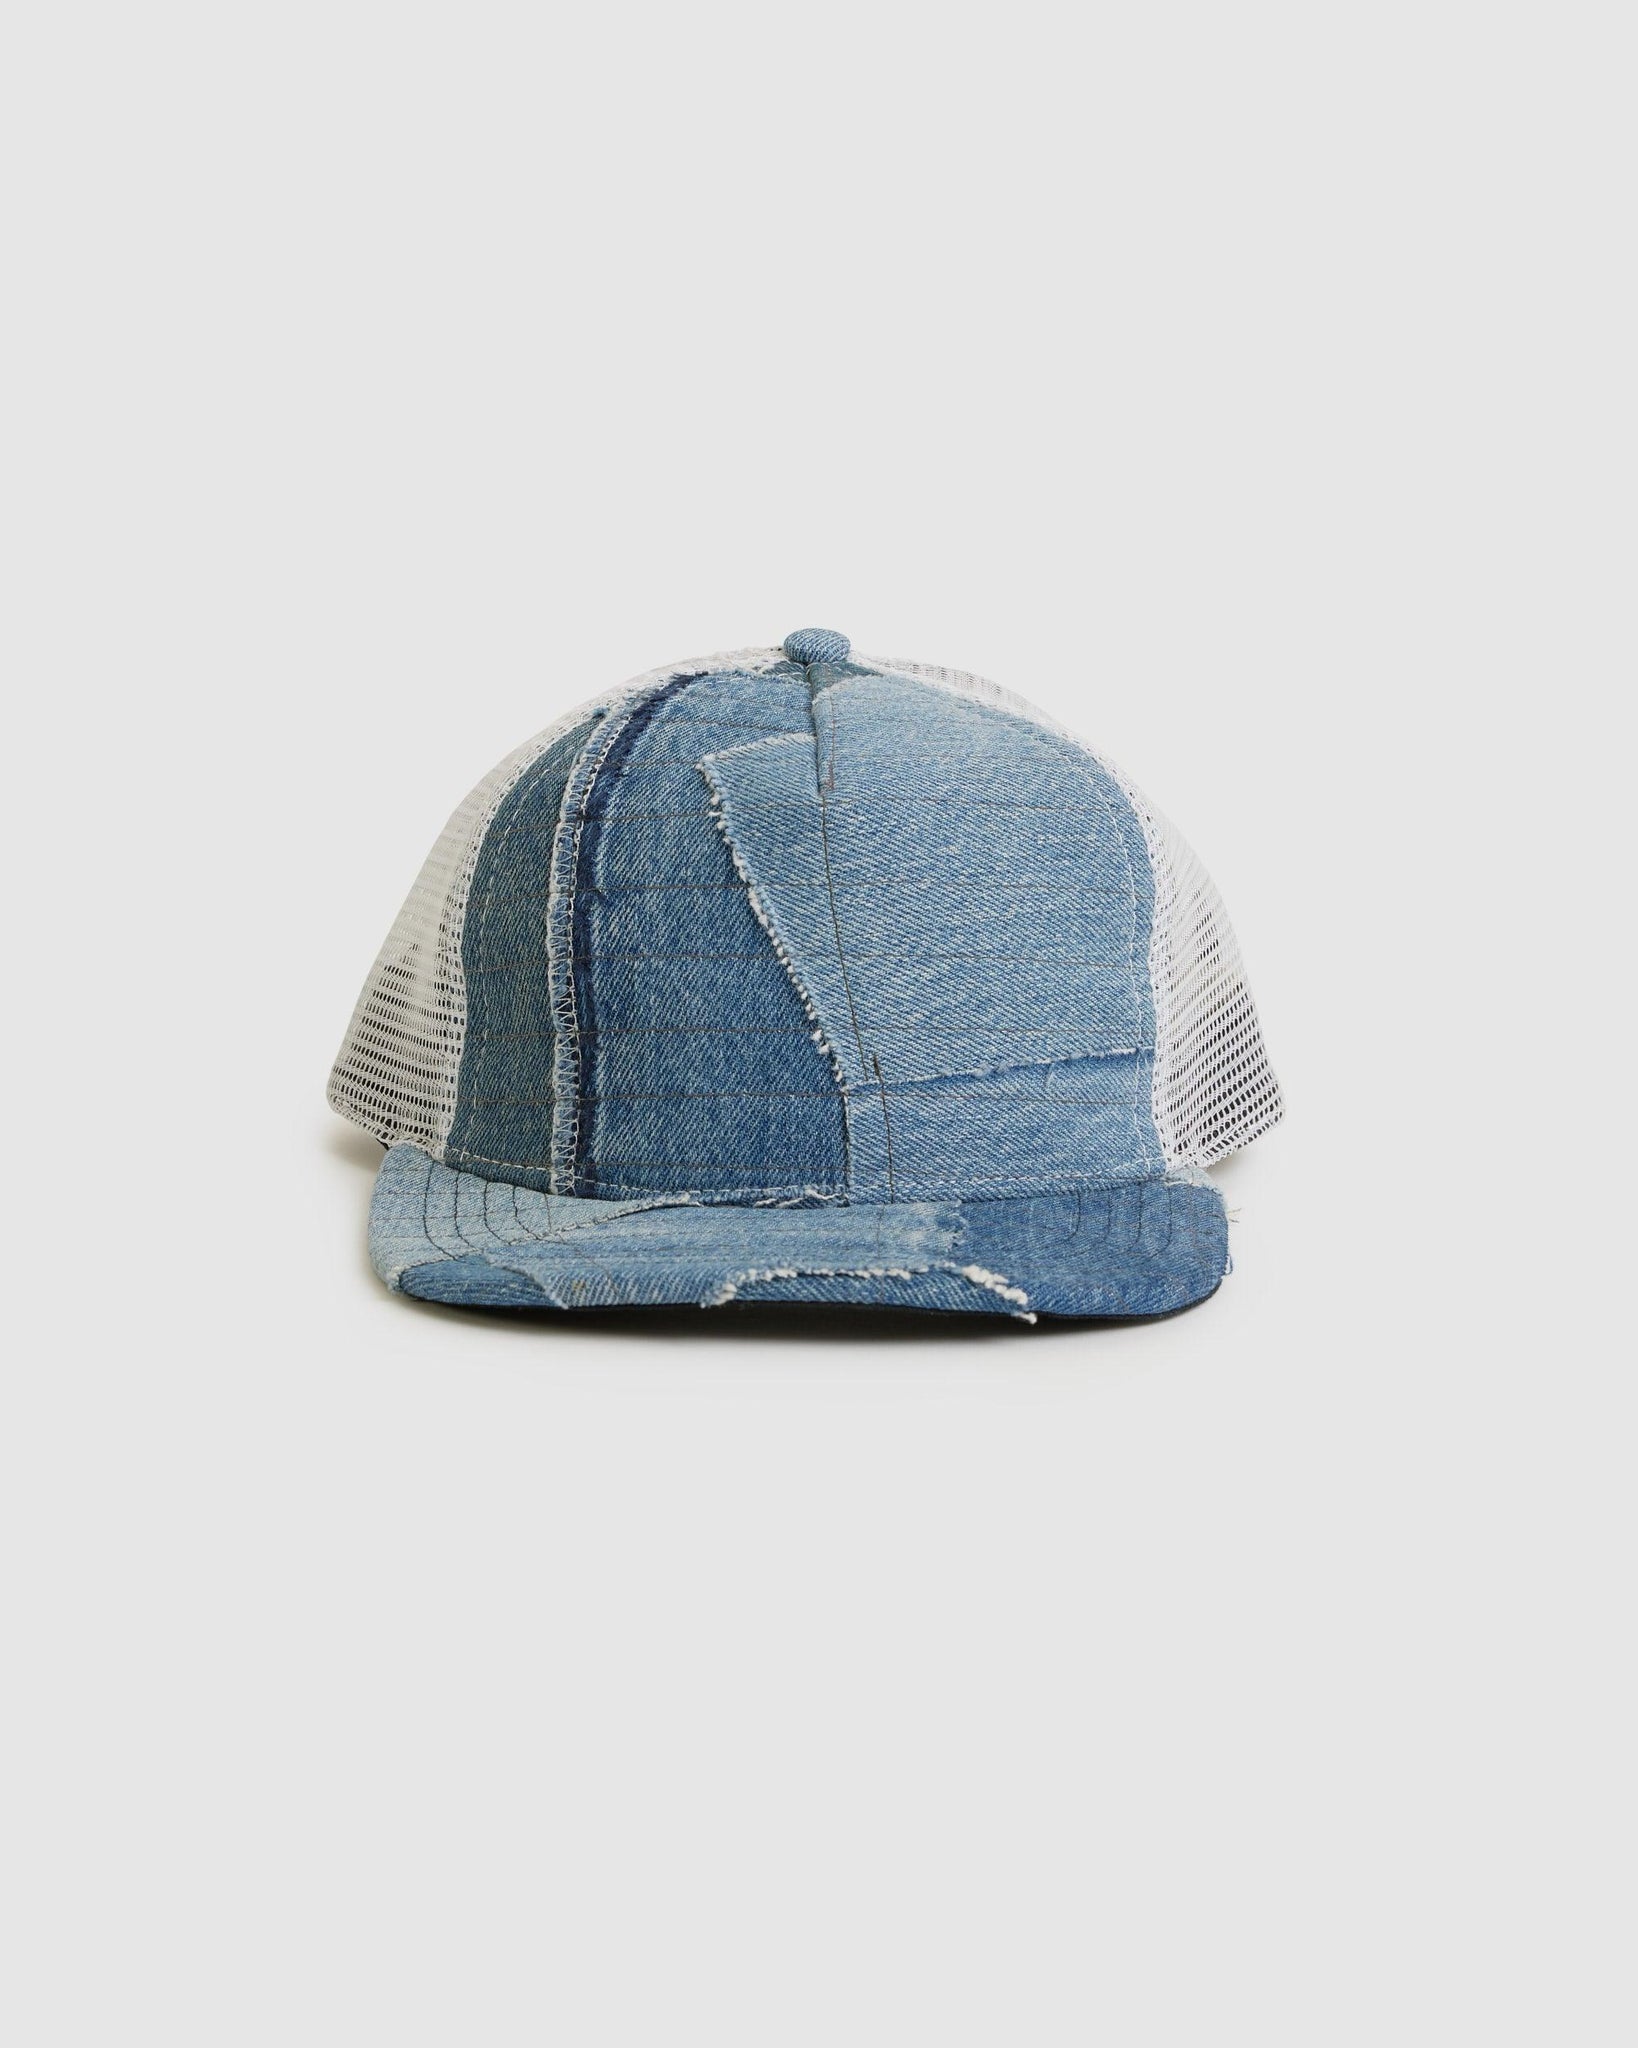 Denim Blue Stitchwork Trucker Hat - {{ collection.title }} - Chinatown Country Club 